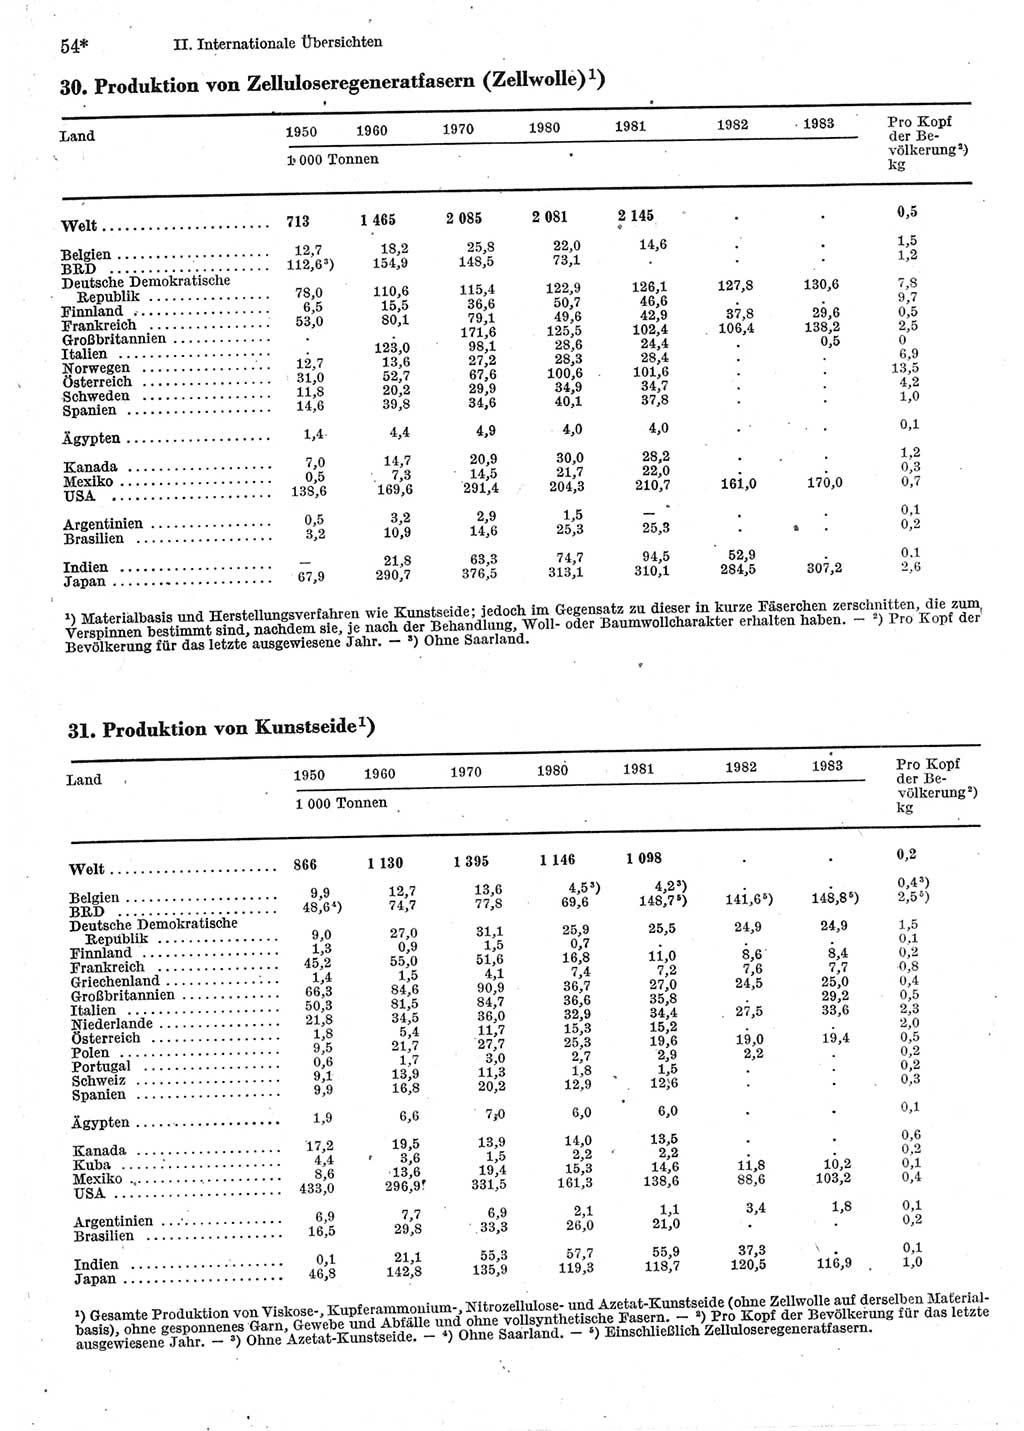 Statistisches Jahrbuch der Deutschen Demokratischen Republik (DDR) 1985, Seite 54 (Stat. Jb. DDR 1985, S. 54)